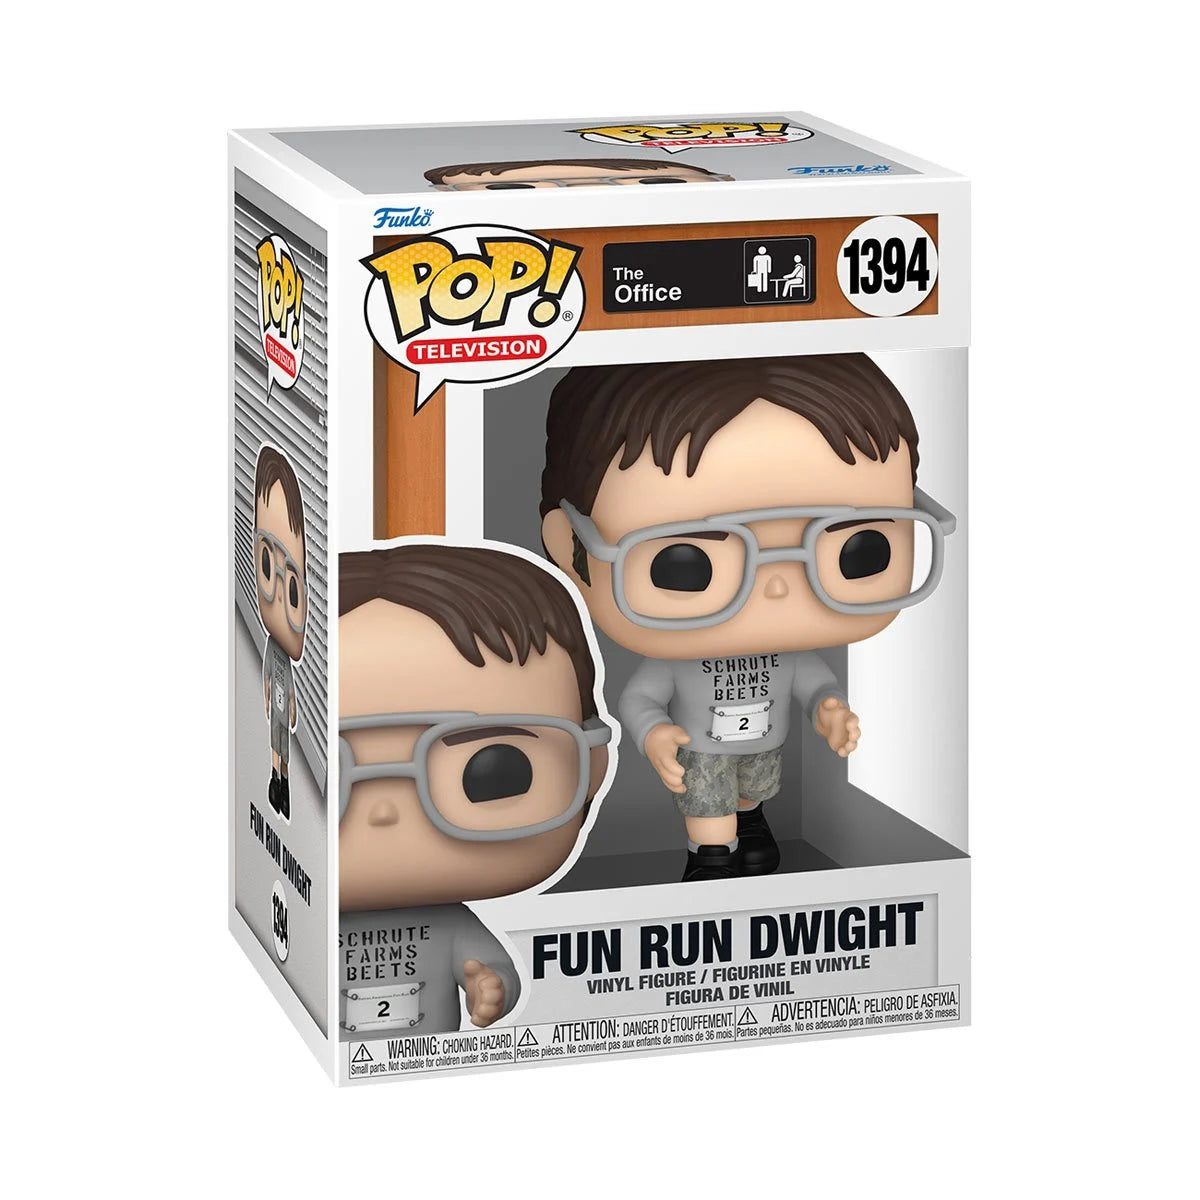 The Office Fun Run Dwight Funko Pop!